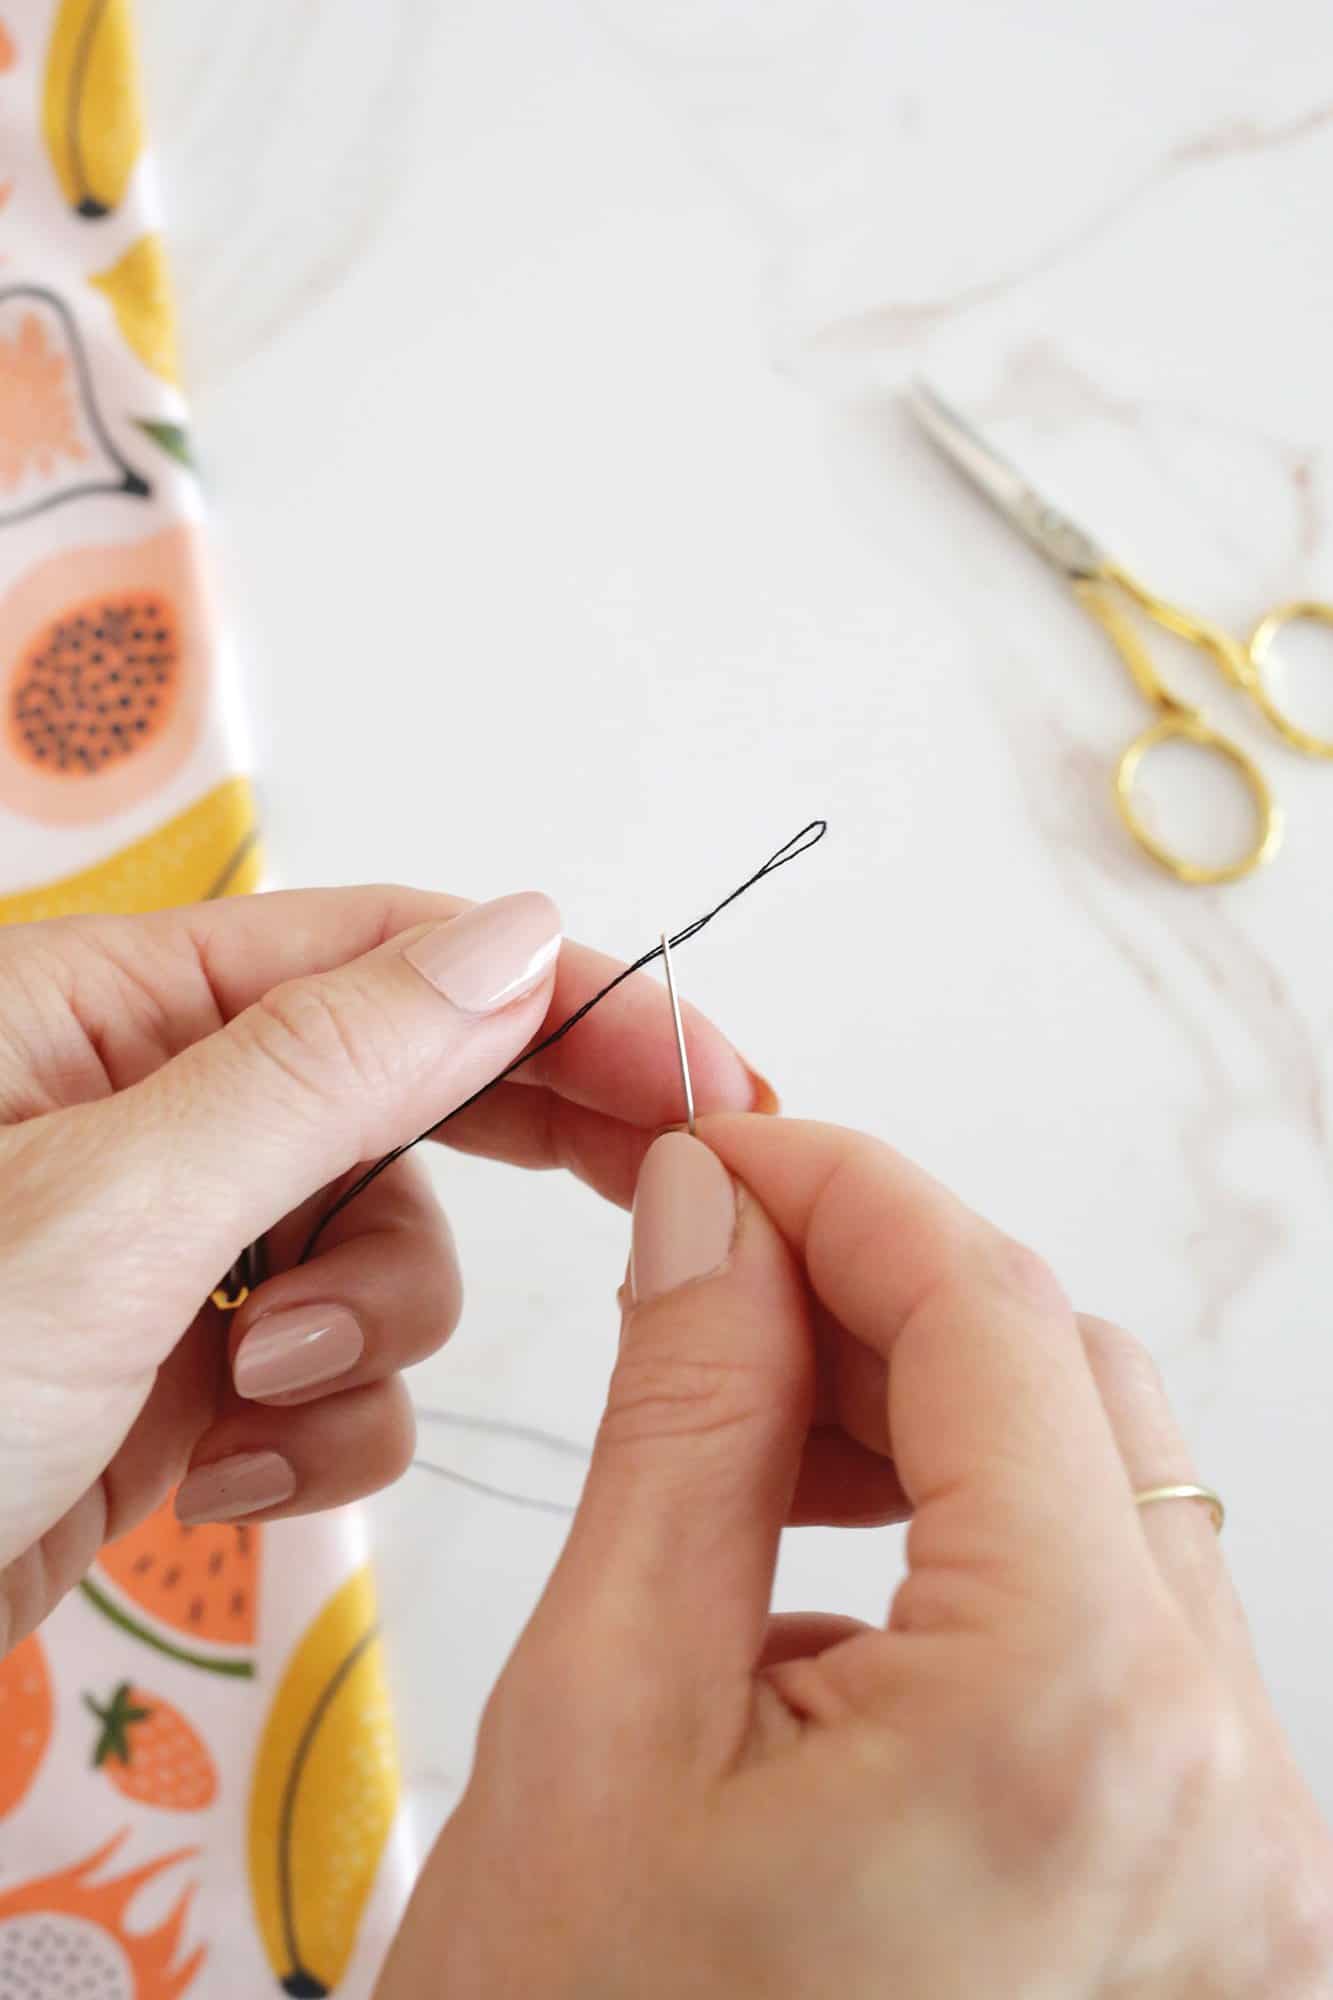 thread through a needle